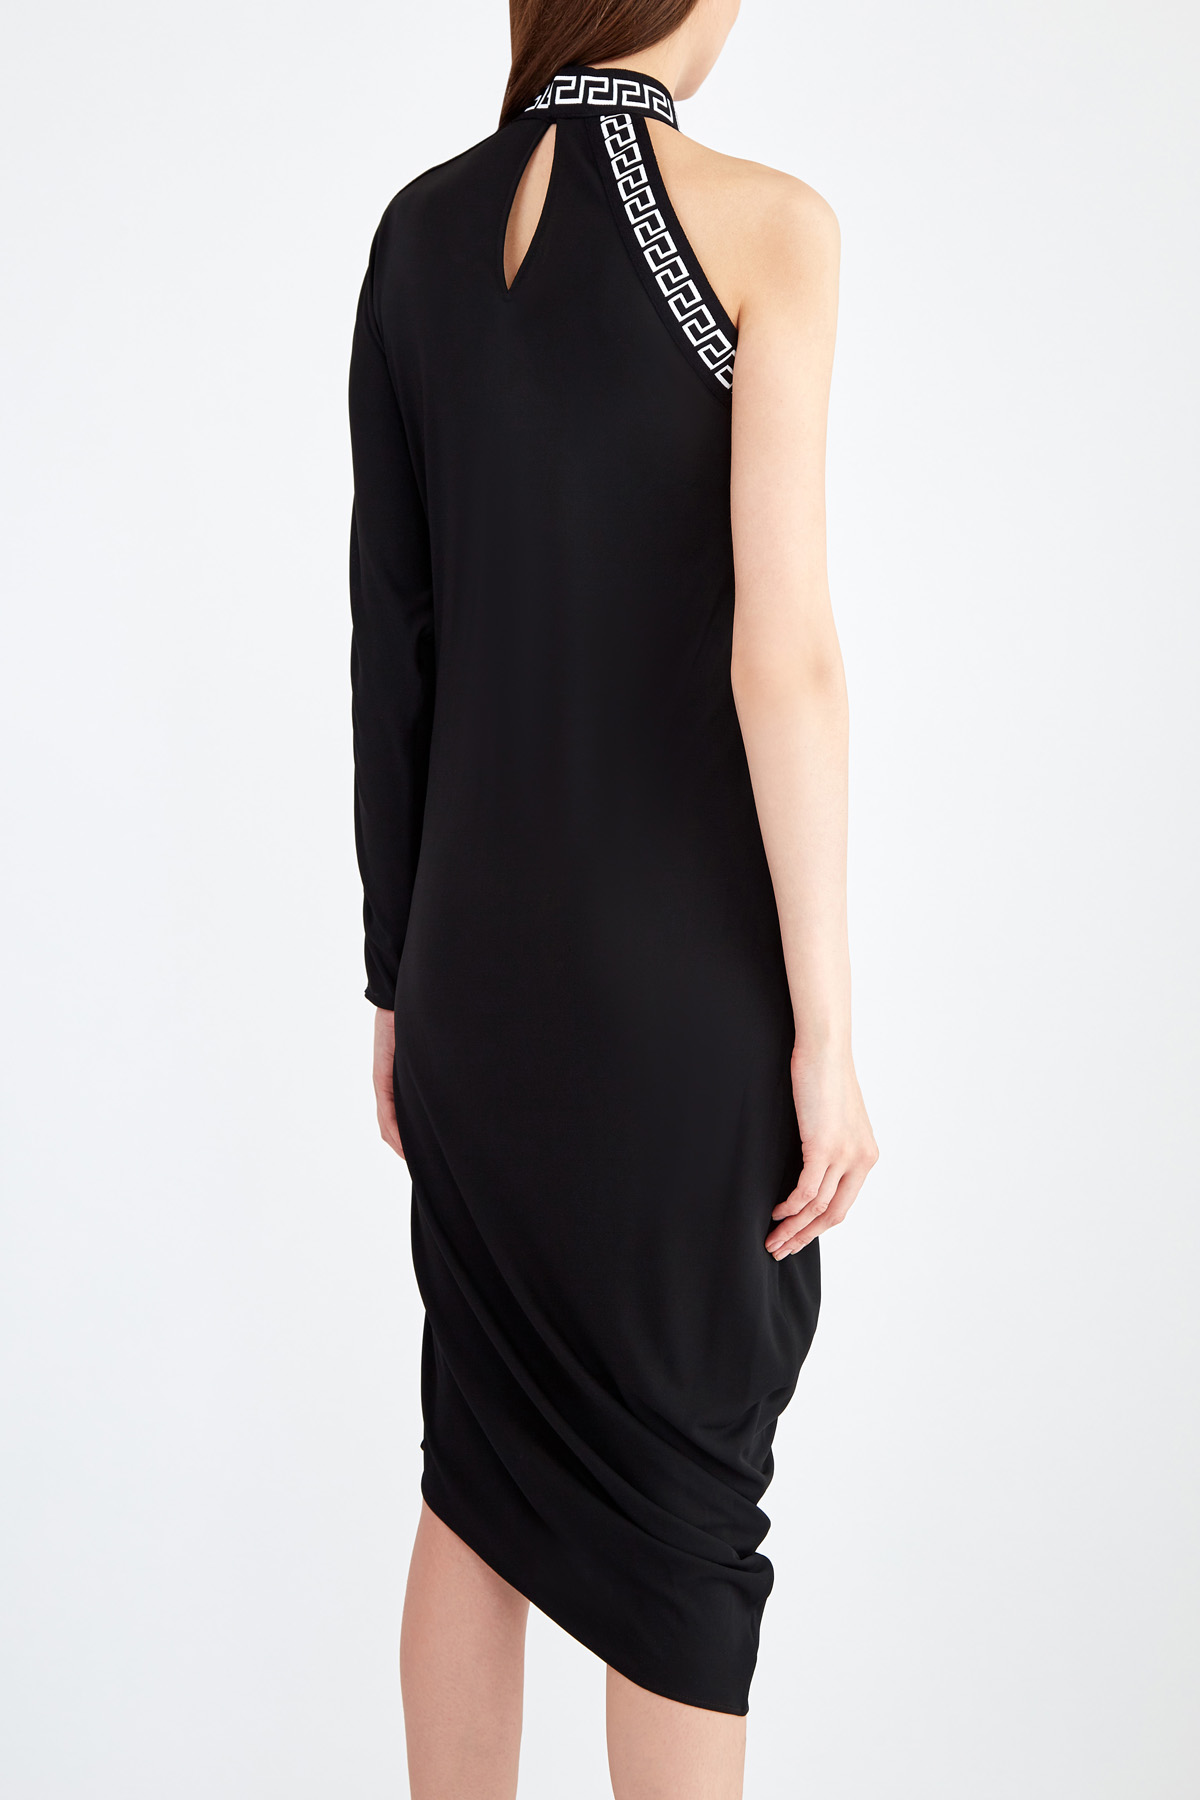 Асимметричное платье в греческом стиле с мотивом Greca и монограммой VERSACE, цвет черный, размер 40 - фото 5